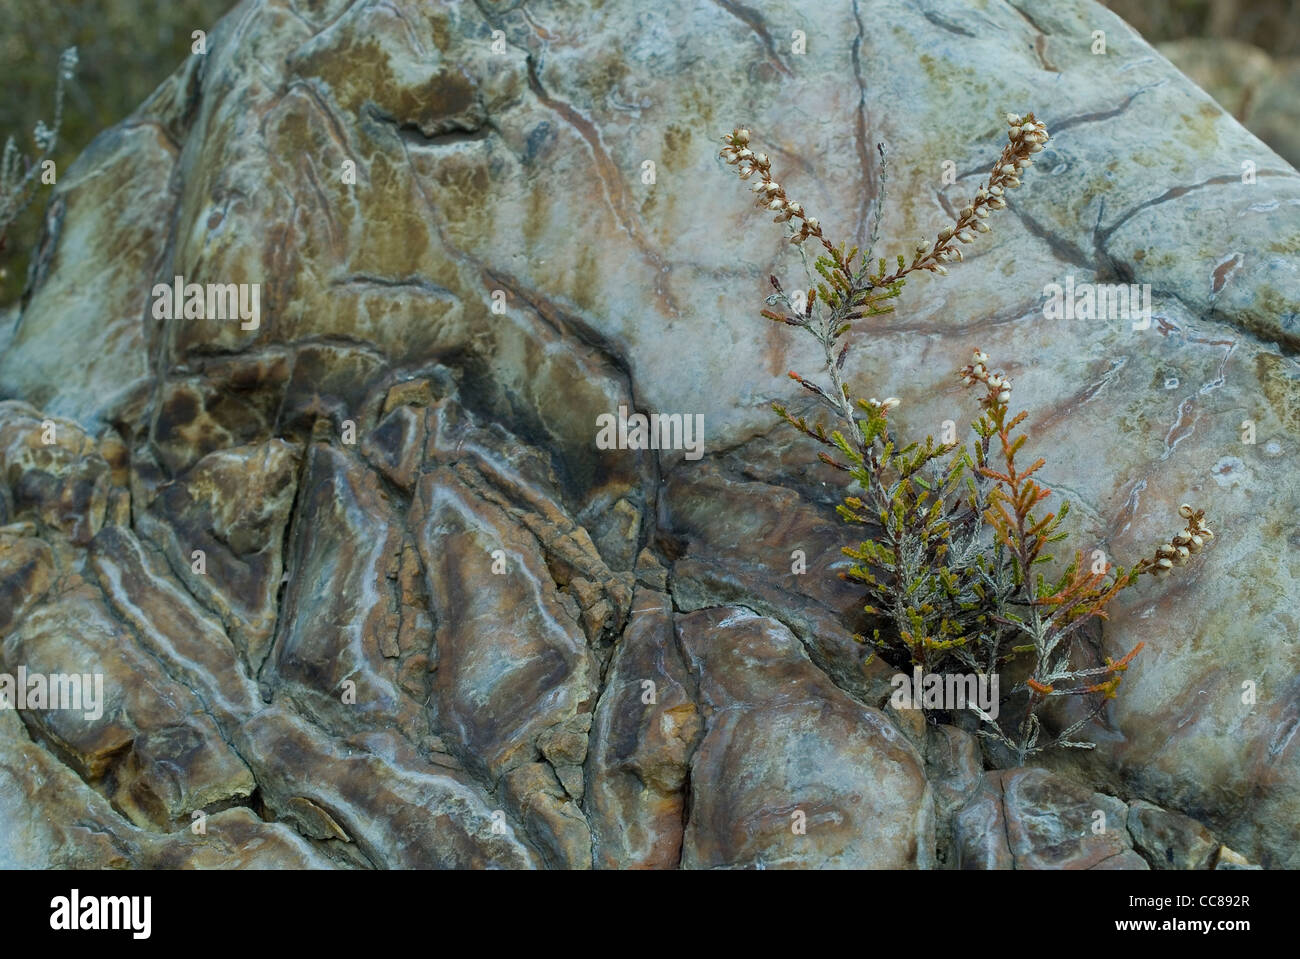 Comunes de brezo (Calluna vulgaris) en el duro ambiente rocoso Foto de stock